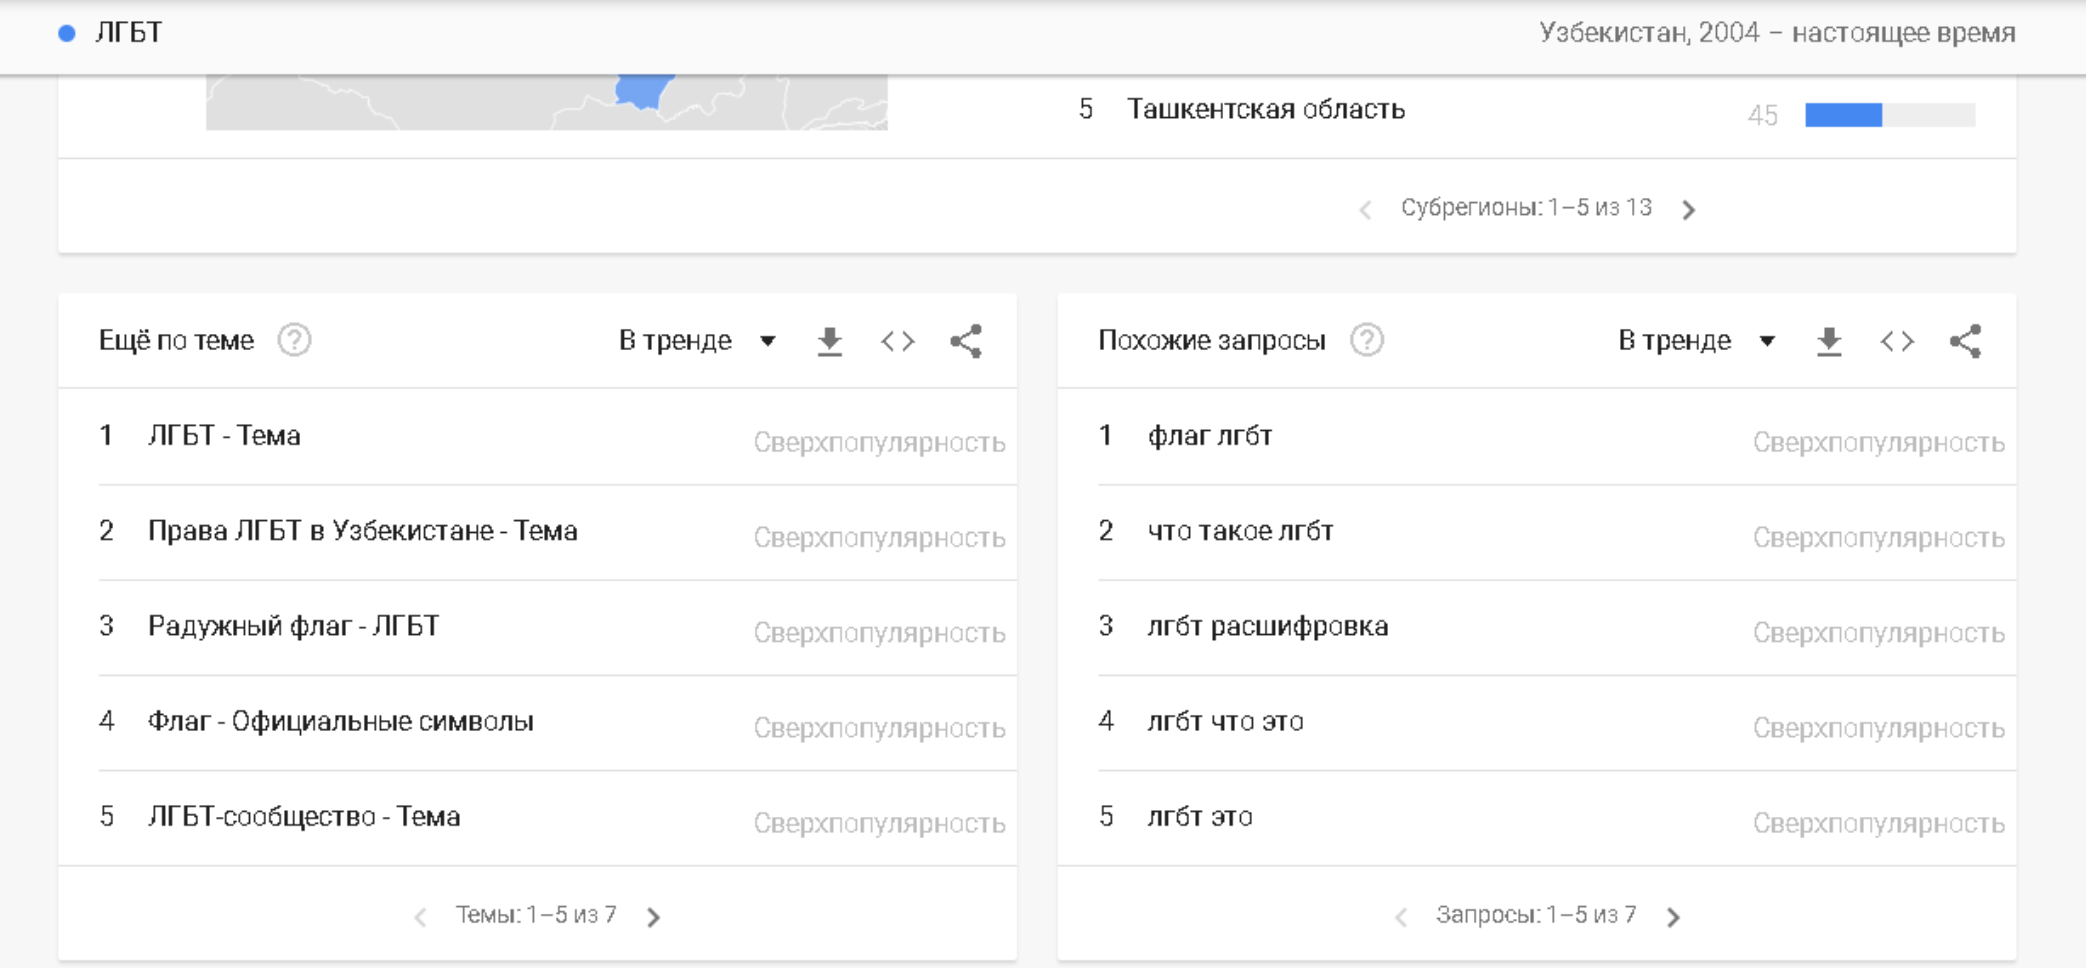 Тема ЛГБТ Google Trends Узбекистан